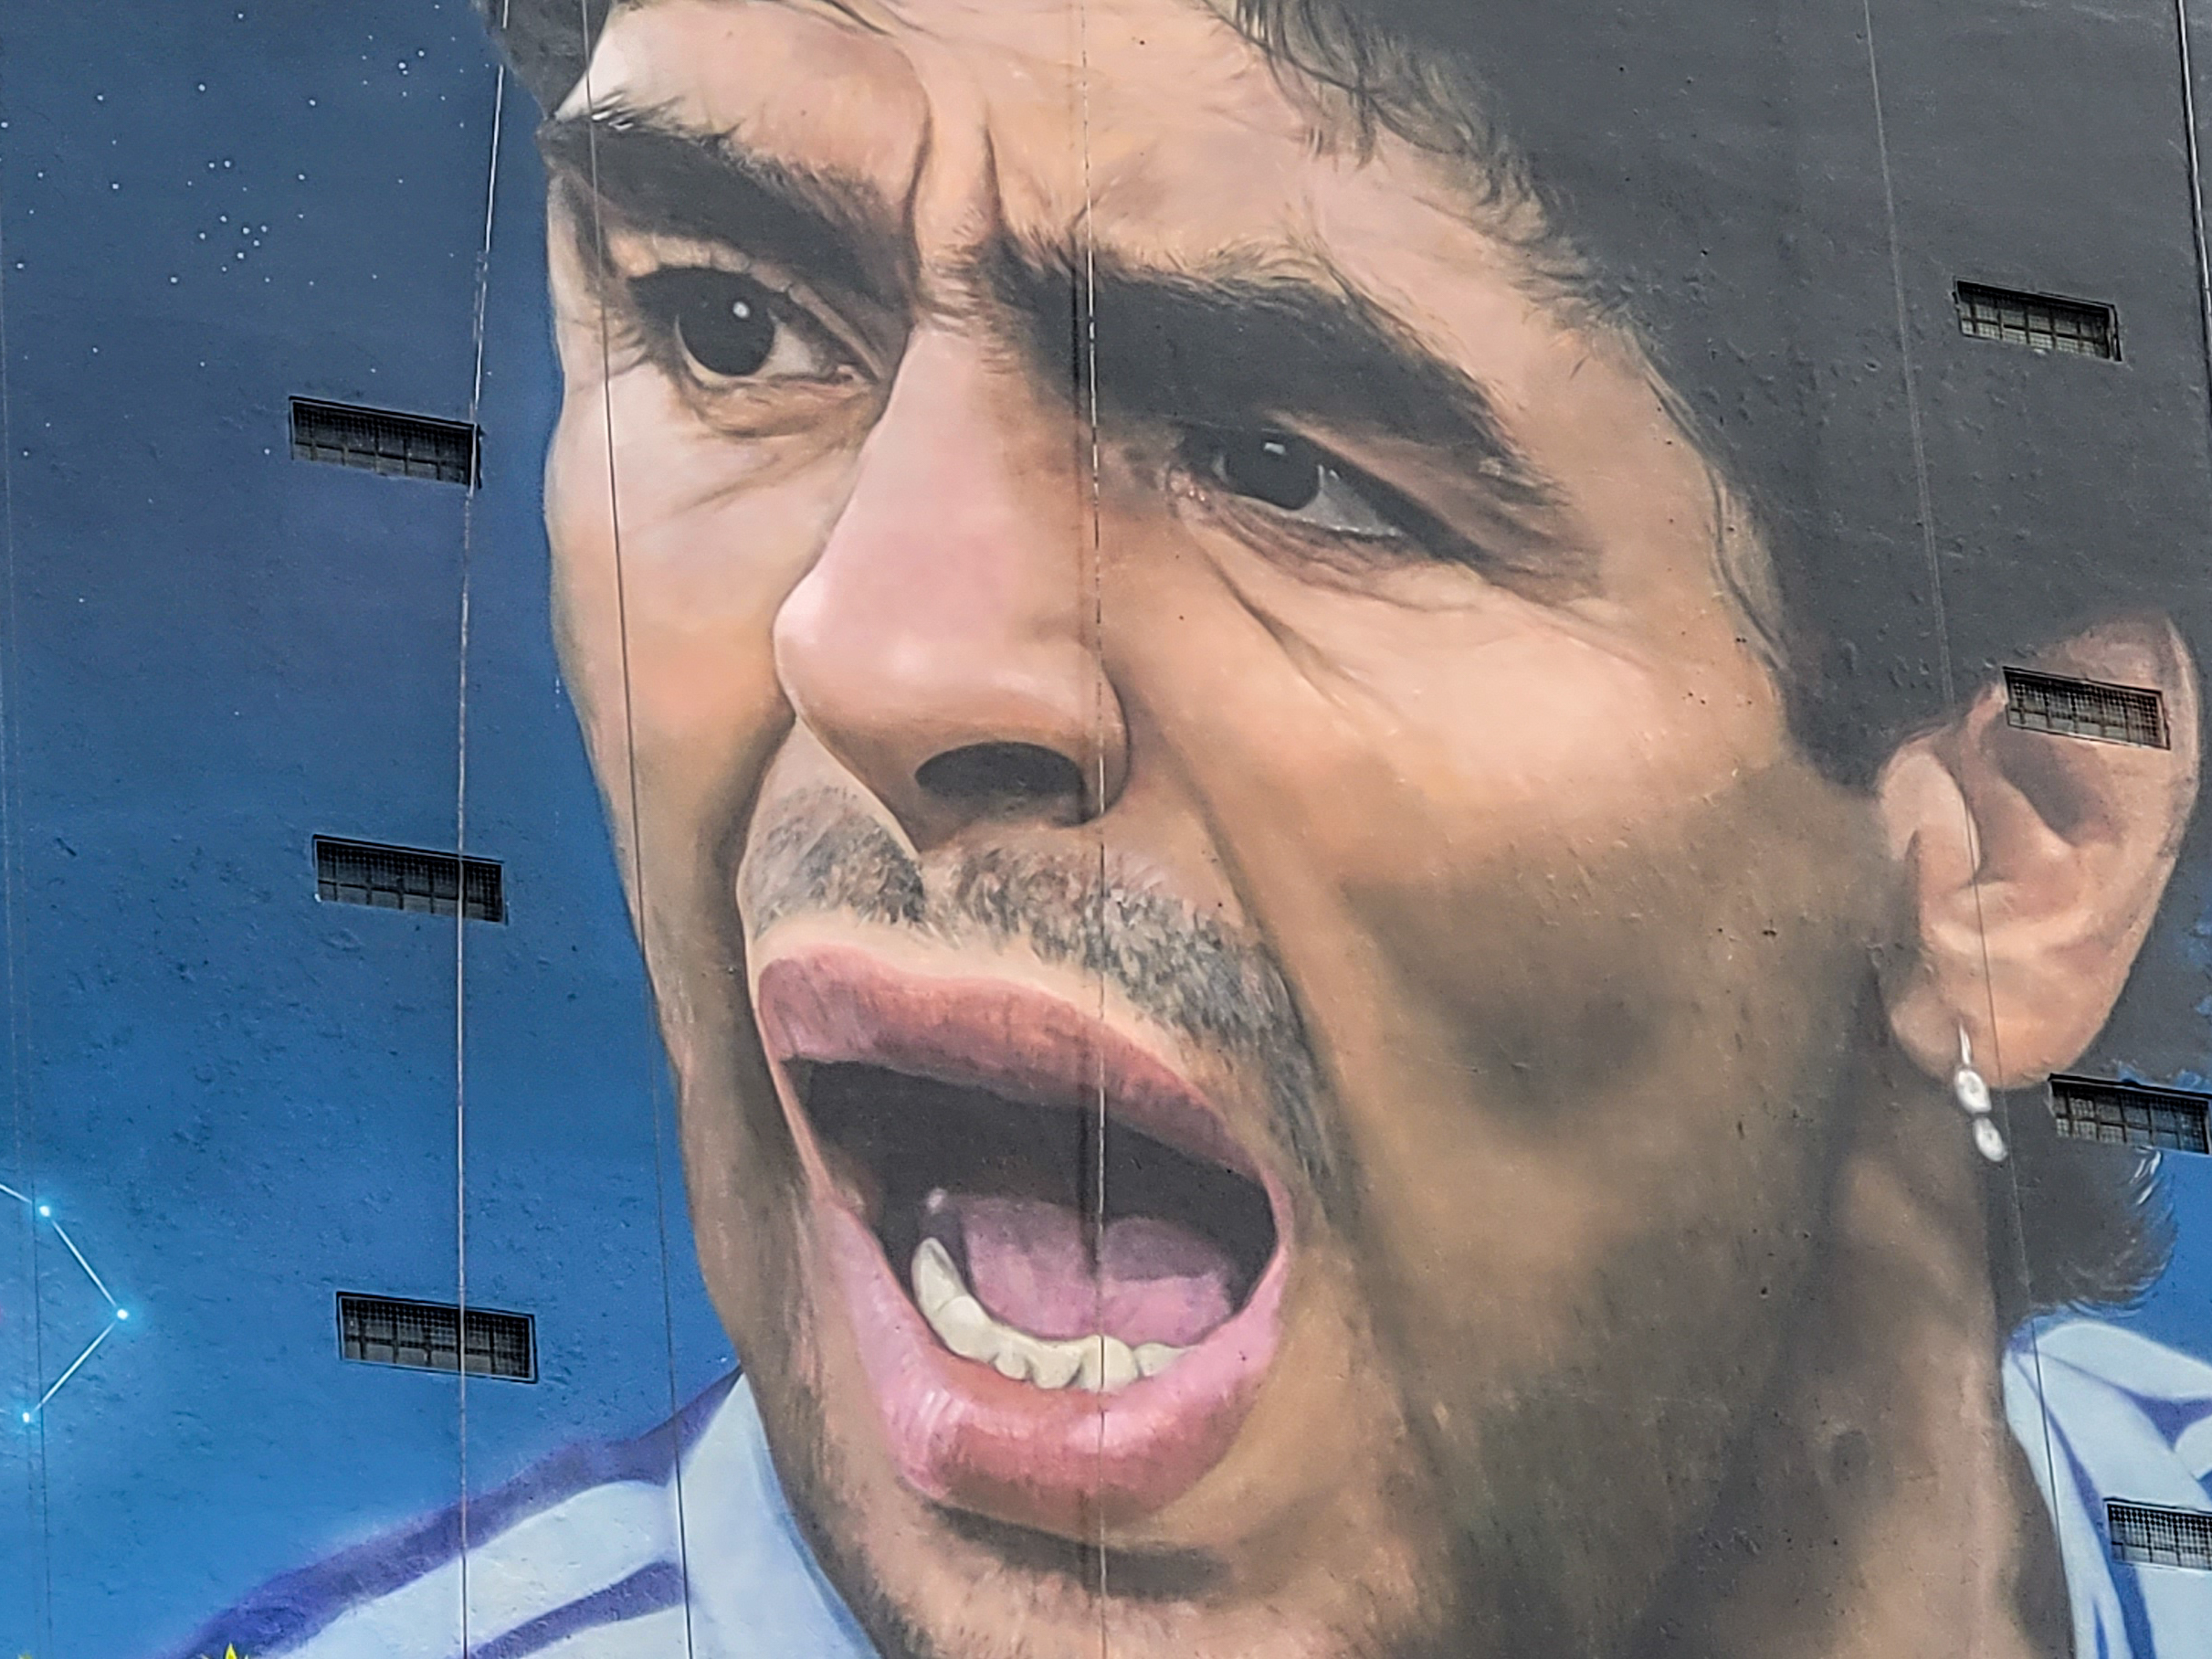 Inauguraron el mural de Maradona más grande del mundo en el barrio de Constitución, Ciudad de Buenos Aires: sus medidas gigantescas son de 40 metros de ancho por 45 de alto (RS Fotos)